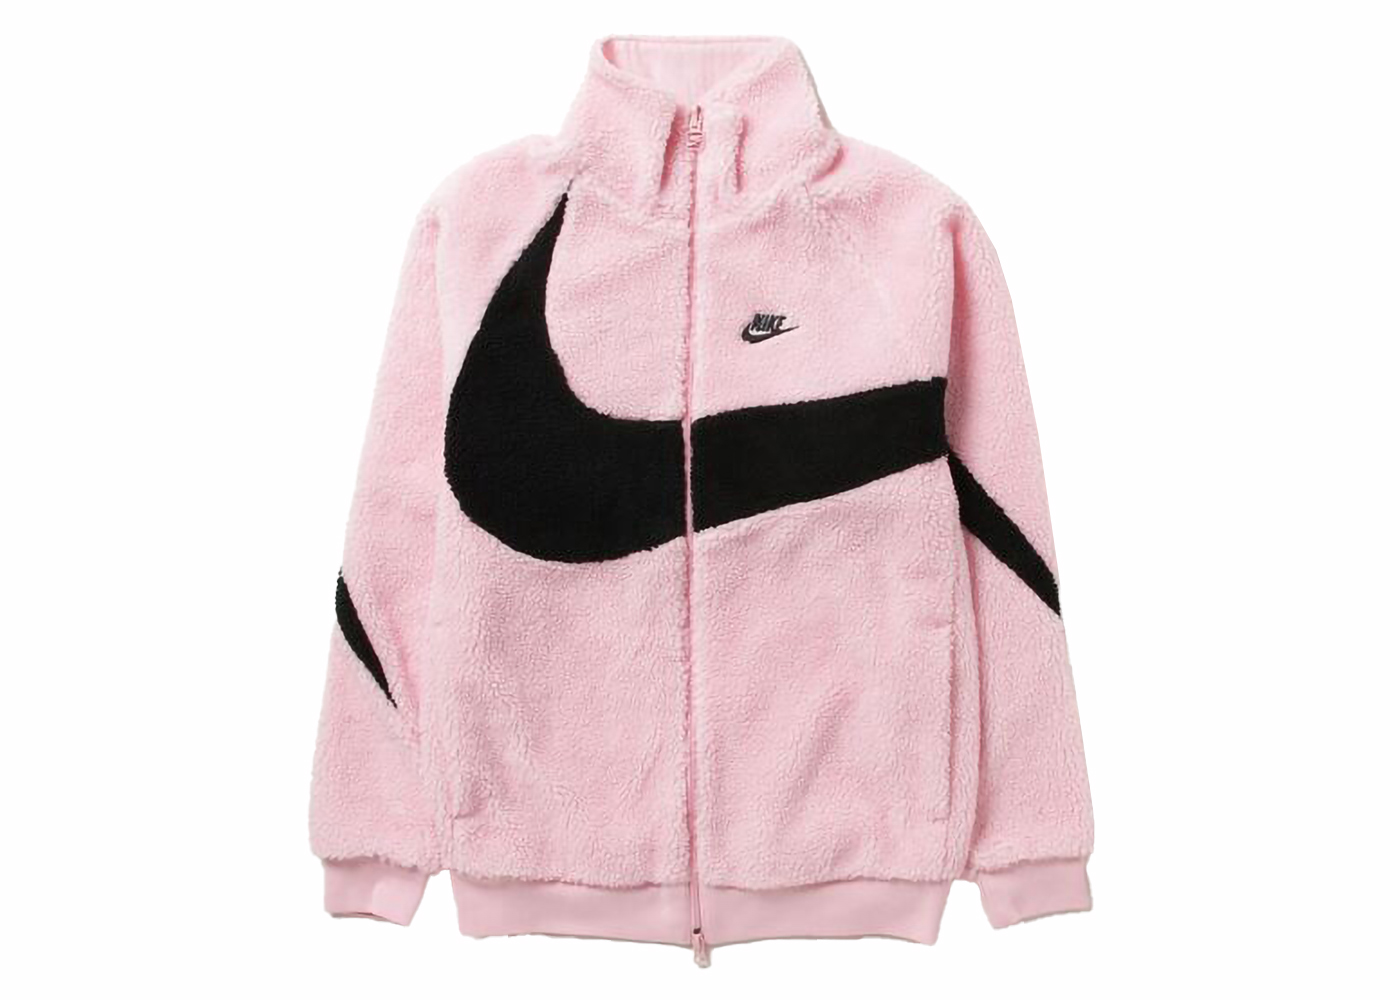 Nike Big Swoosh Reversible Boa Jacket (Asia Sizing) Black White 